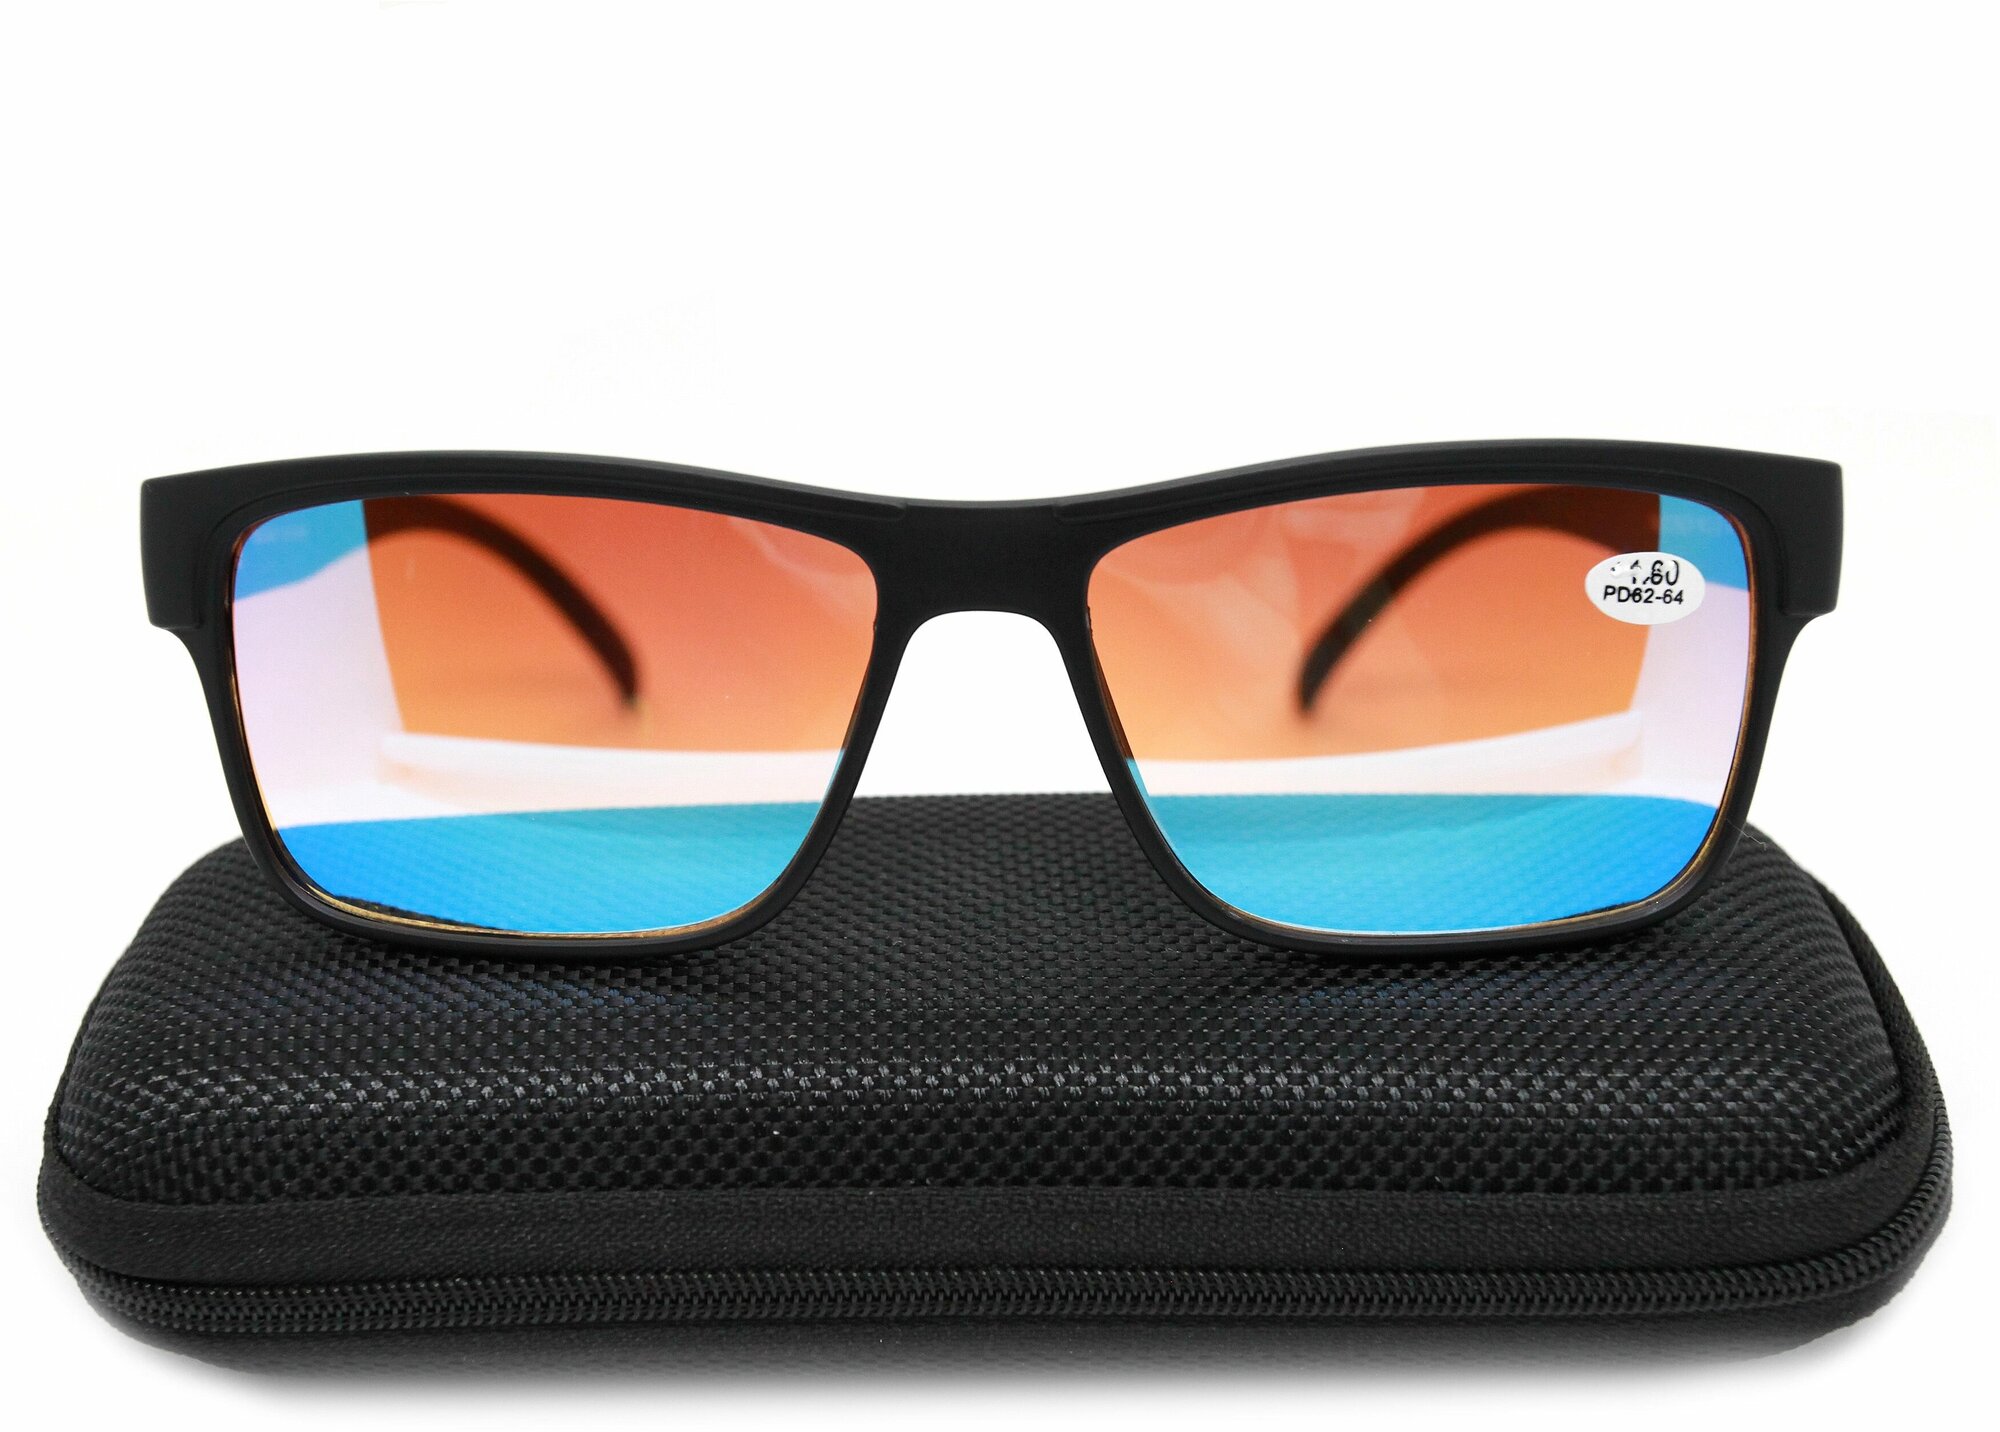 Готовые очки для зрения-дали с диоптриями (-1.00) корригирующие мужские очки сонцезащитные зеркальные тонированные FM0213 с футляром PD62-64